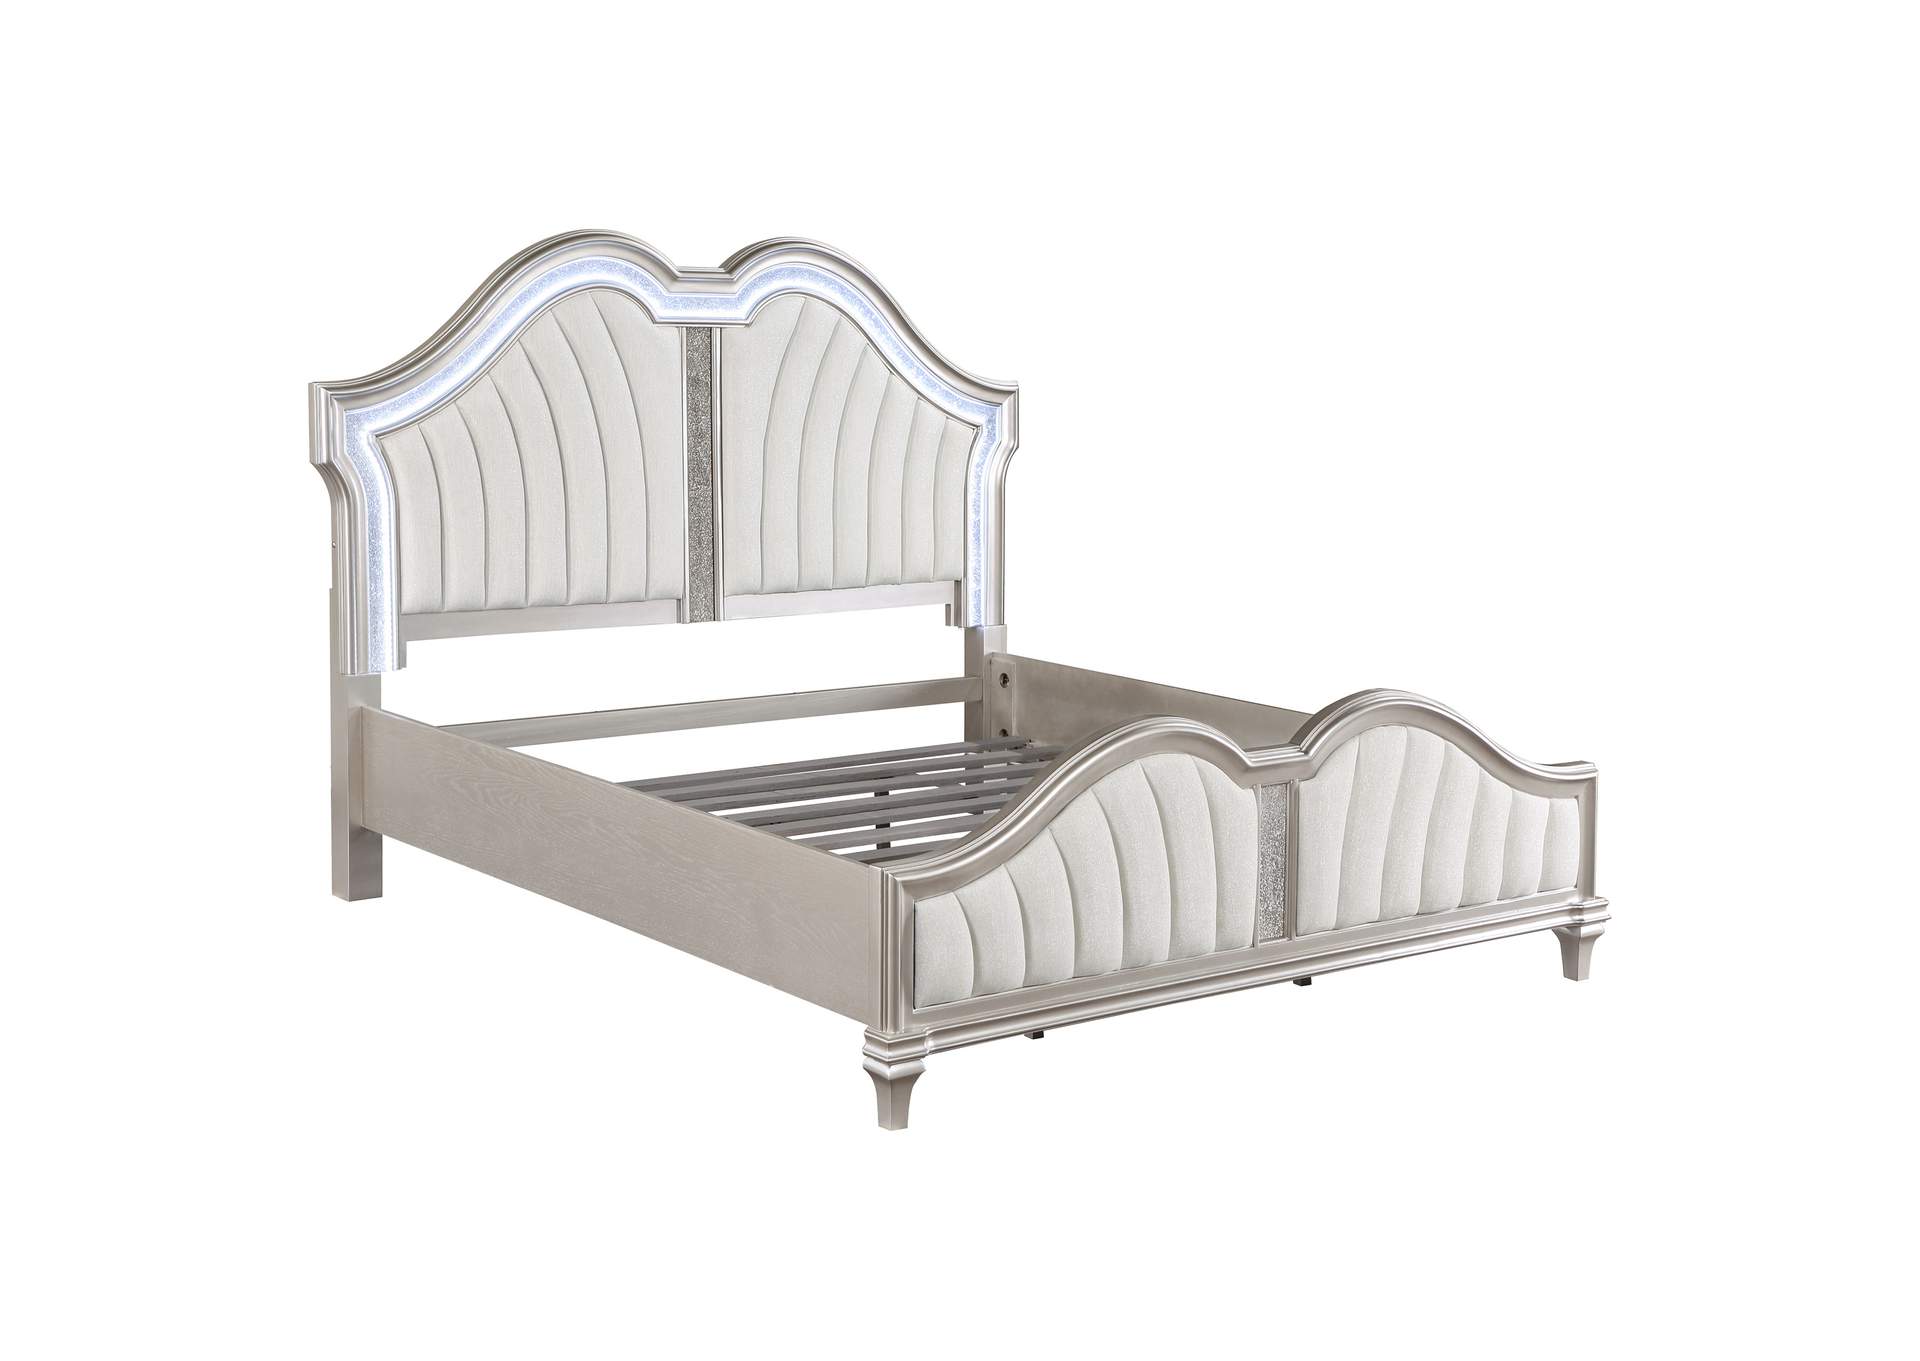 Evangeline 5-piece Upholstered Platform Eastern King Bedroom Set Ivory and Silver Oak,Coaster Furniture